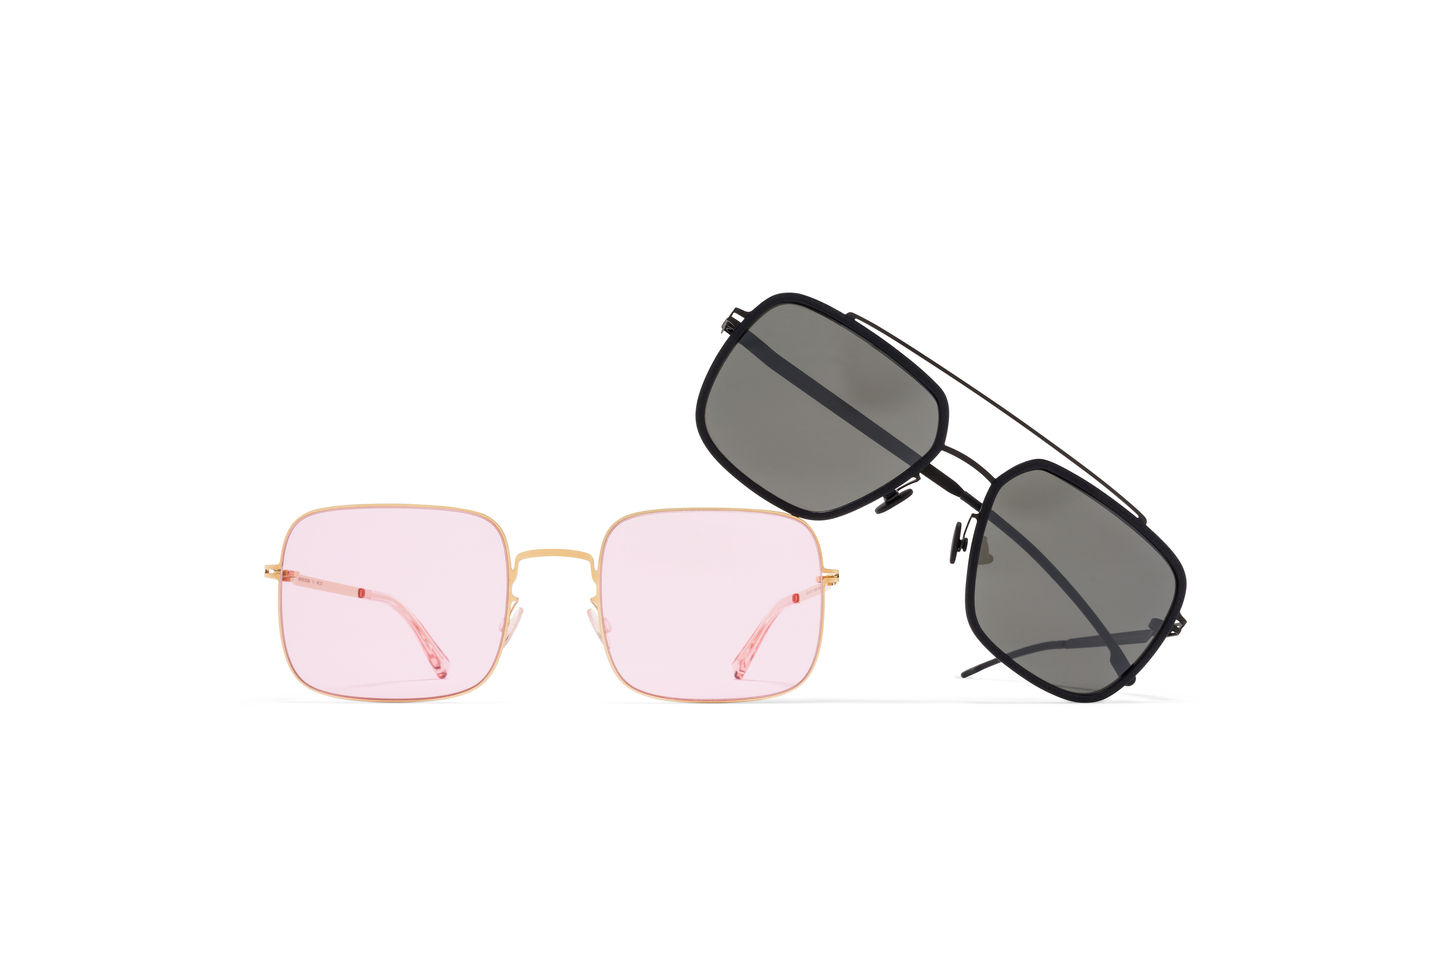 mykita-no1-mylon-masculine-sunglasses-nino-bloc-01.jpg